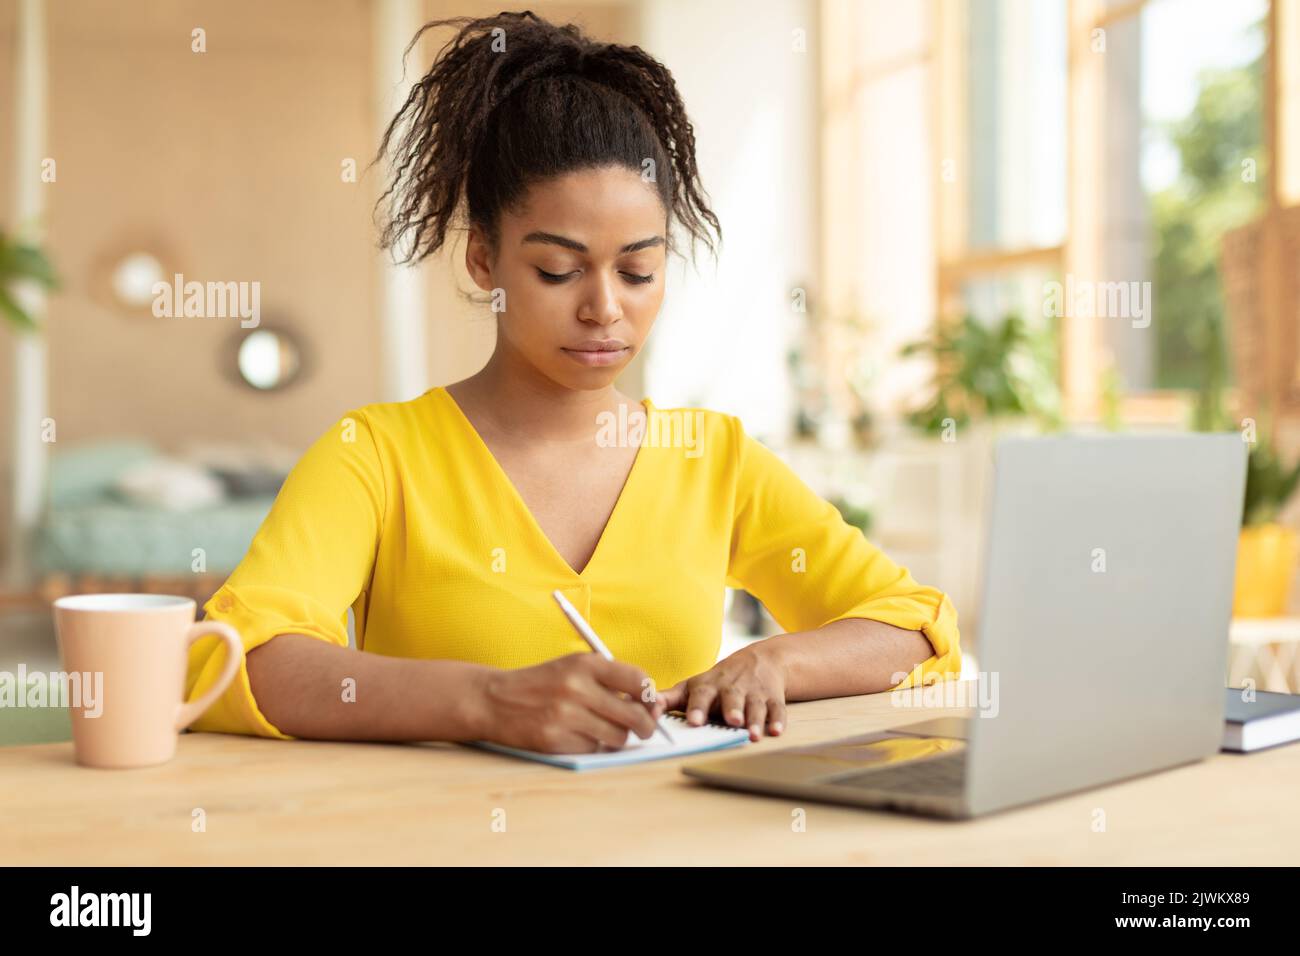 Une étudiante noire ciblée prend des notes, regarde des cours en ligne sur un ordinateur portable, apprend en ligne à la maison, s'assoit au bureau Banque D'Images